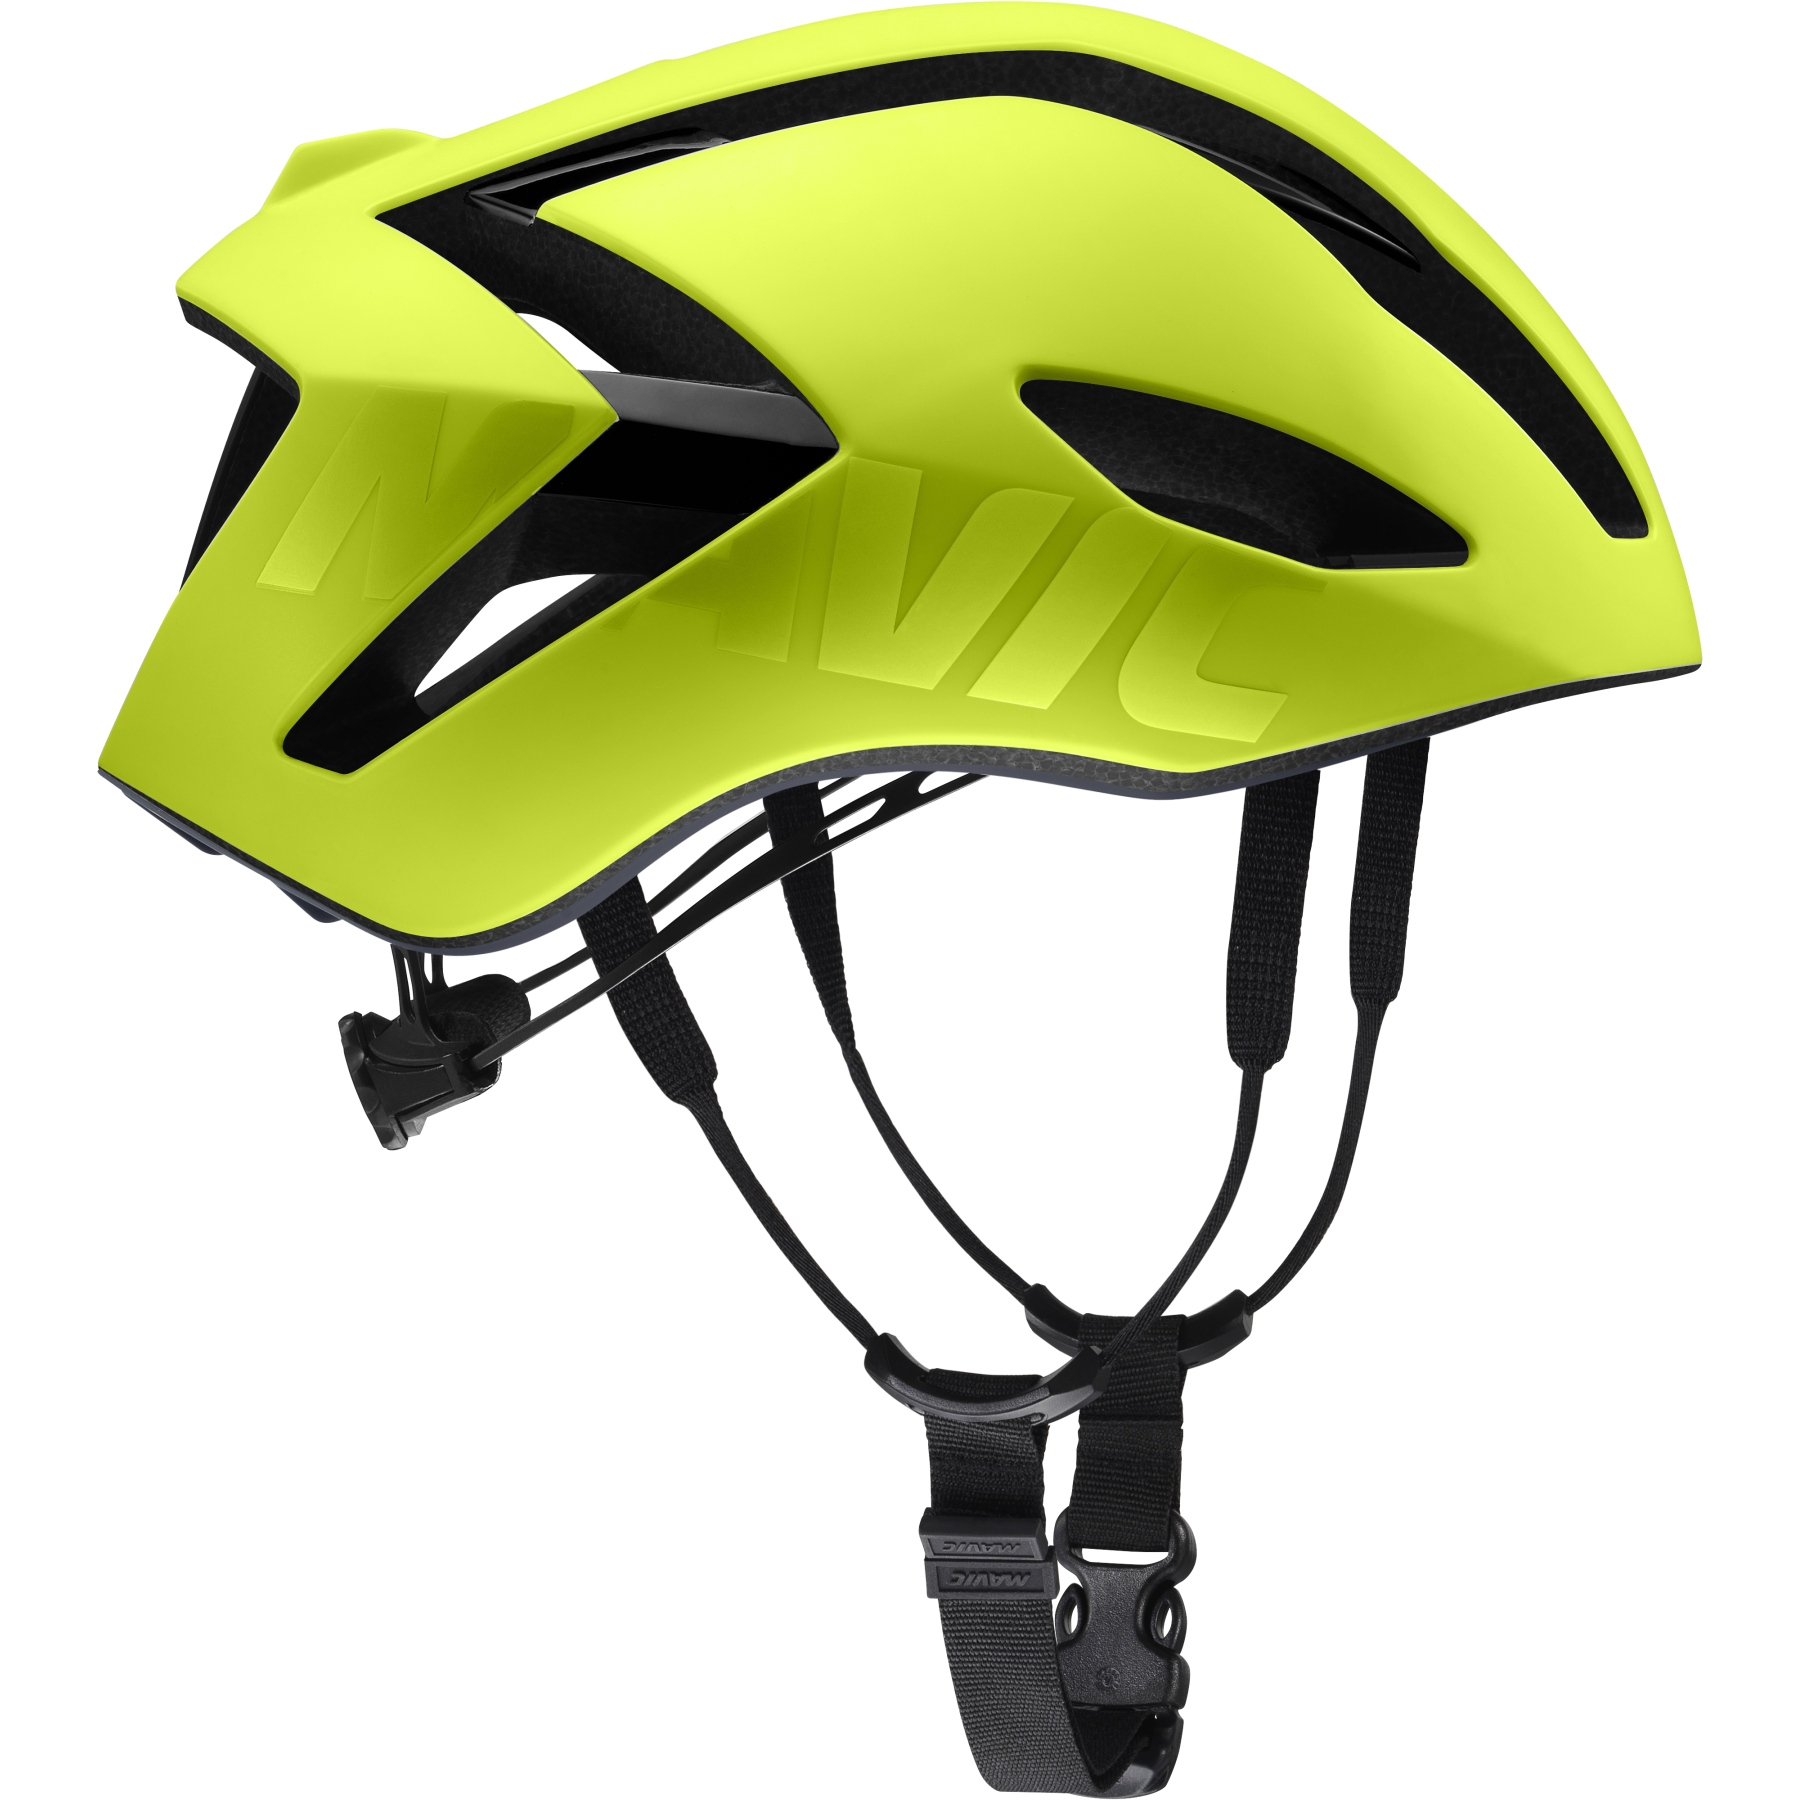 Produktbild von Mavic Comete Ultimate MIPS Helm - safety yellow